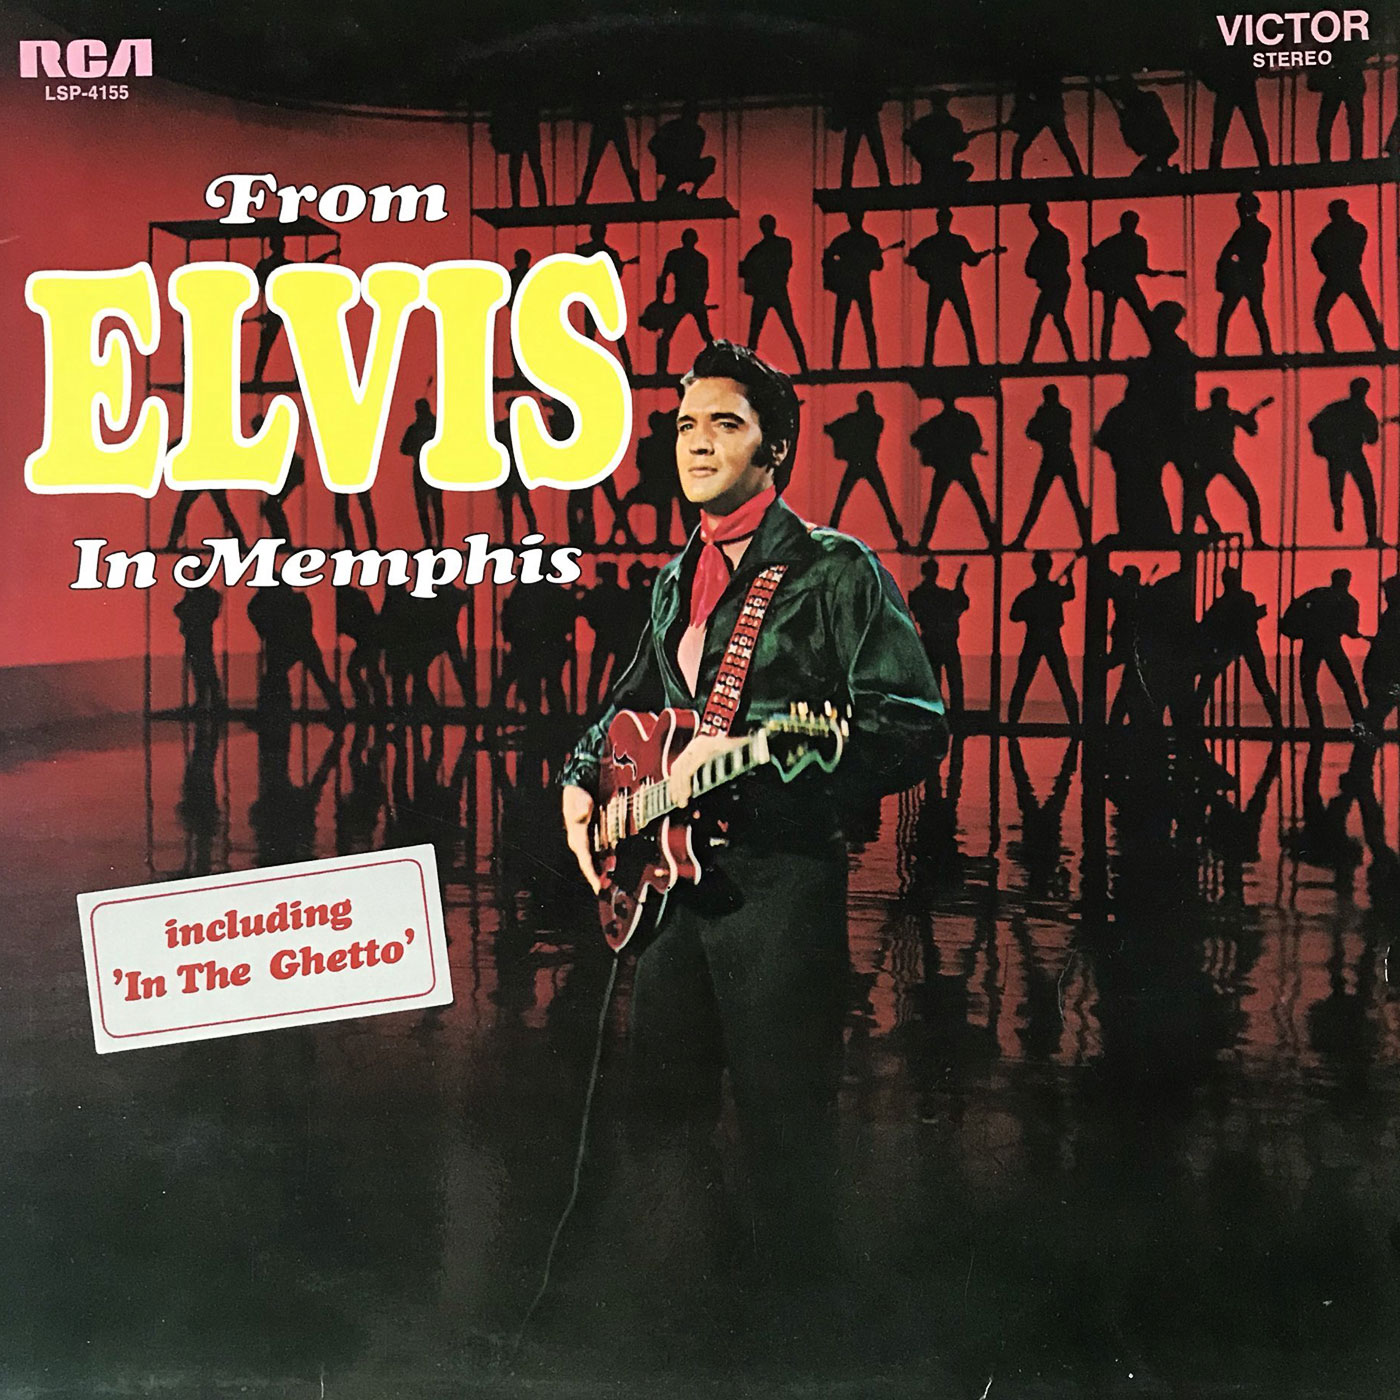 152 Elvis Presley – From Elvis in Memphis